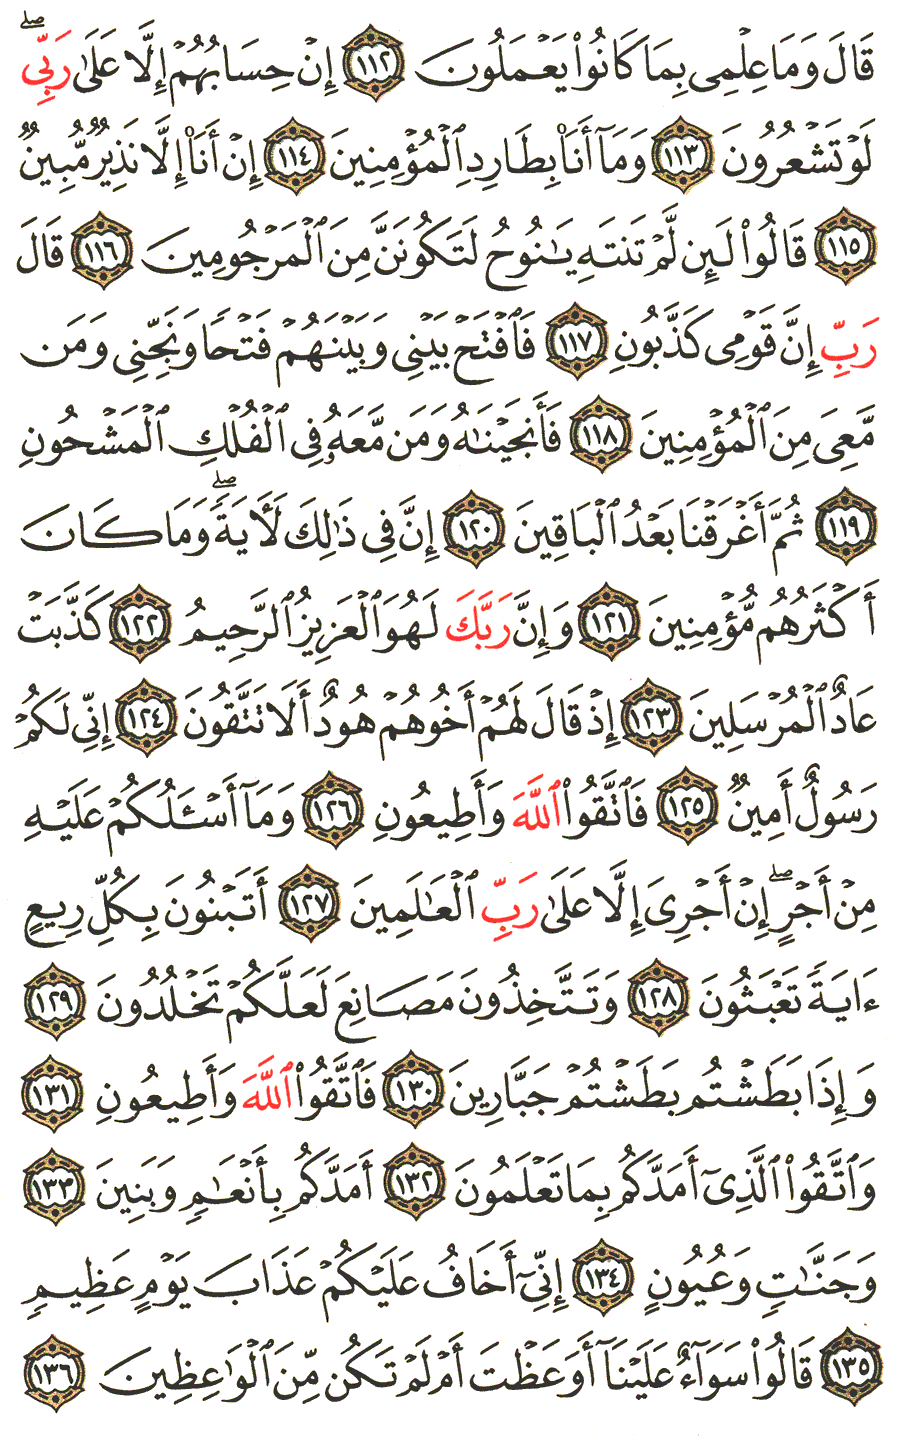 الصفحة رقم 372  من القرآن الكريم مكتوبة من المصحف